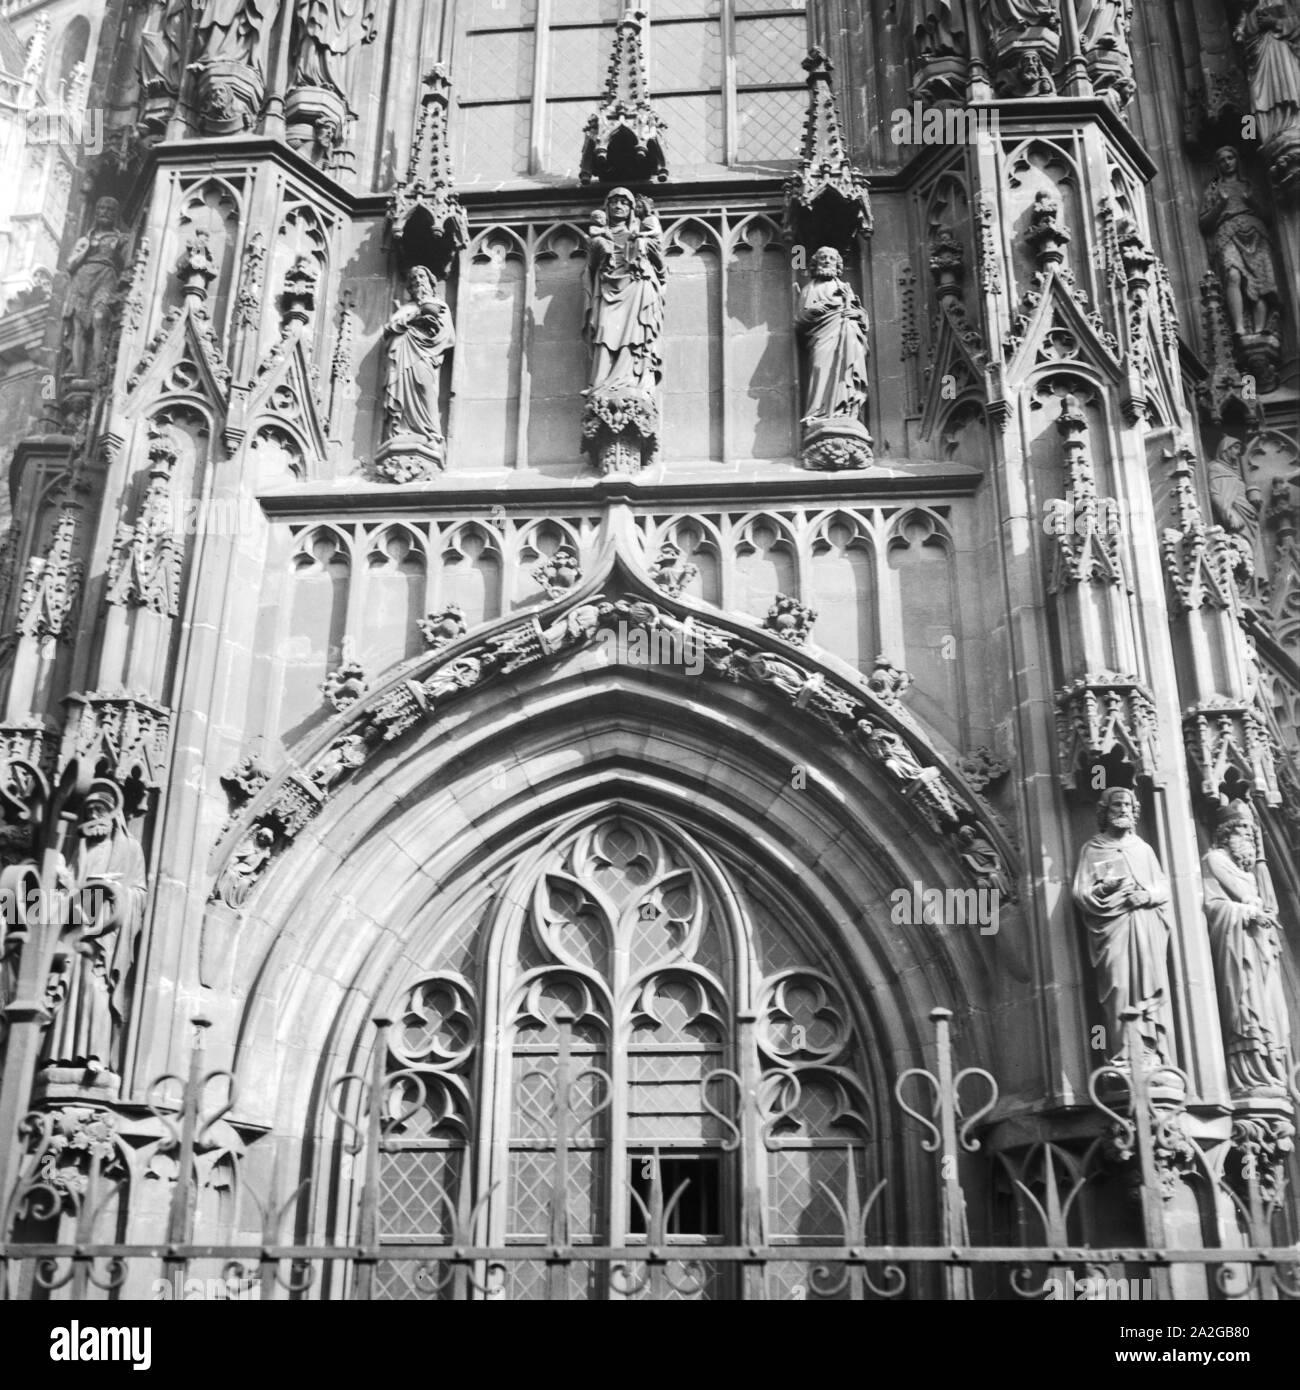 Dettagli am Kaiserdom zu Aachen, Deutschland 1930er Jahre. Dettagli presso la cattedrale di Aachen, Germania 1930s. Foto Stock